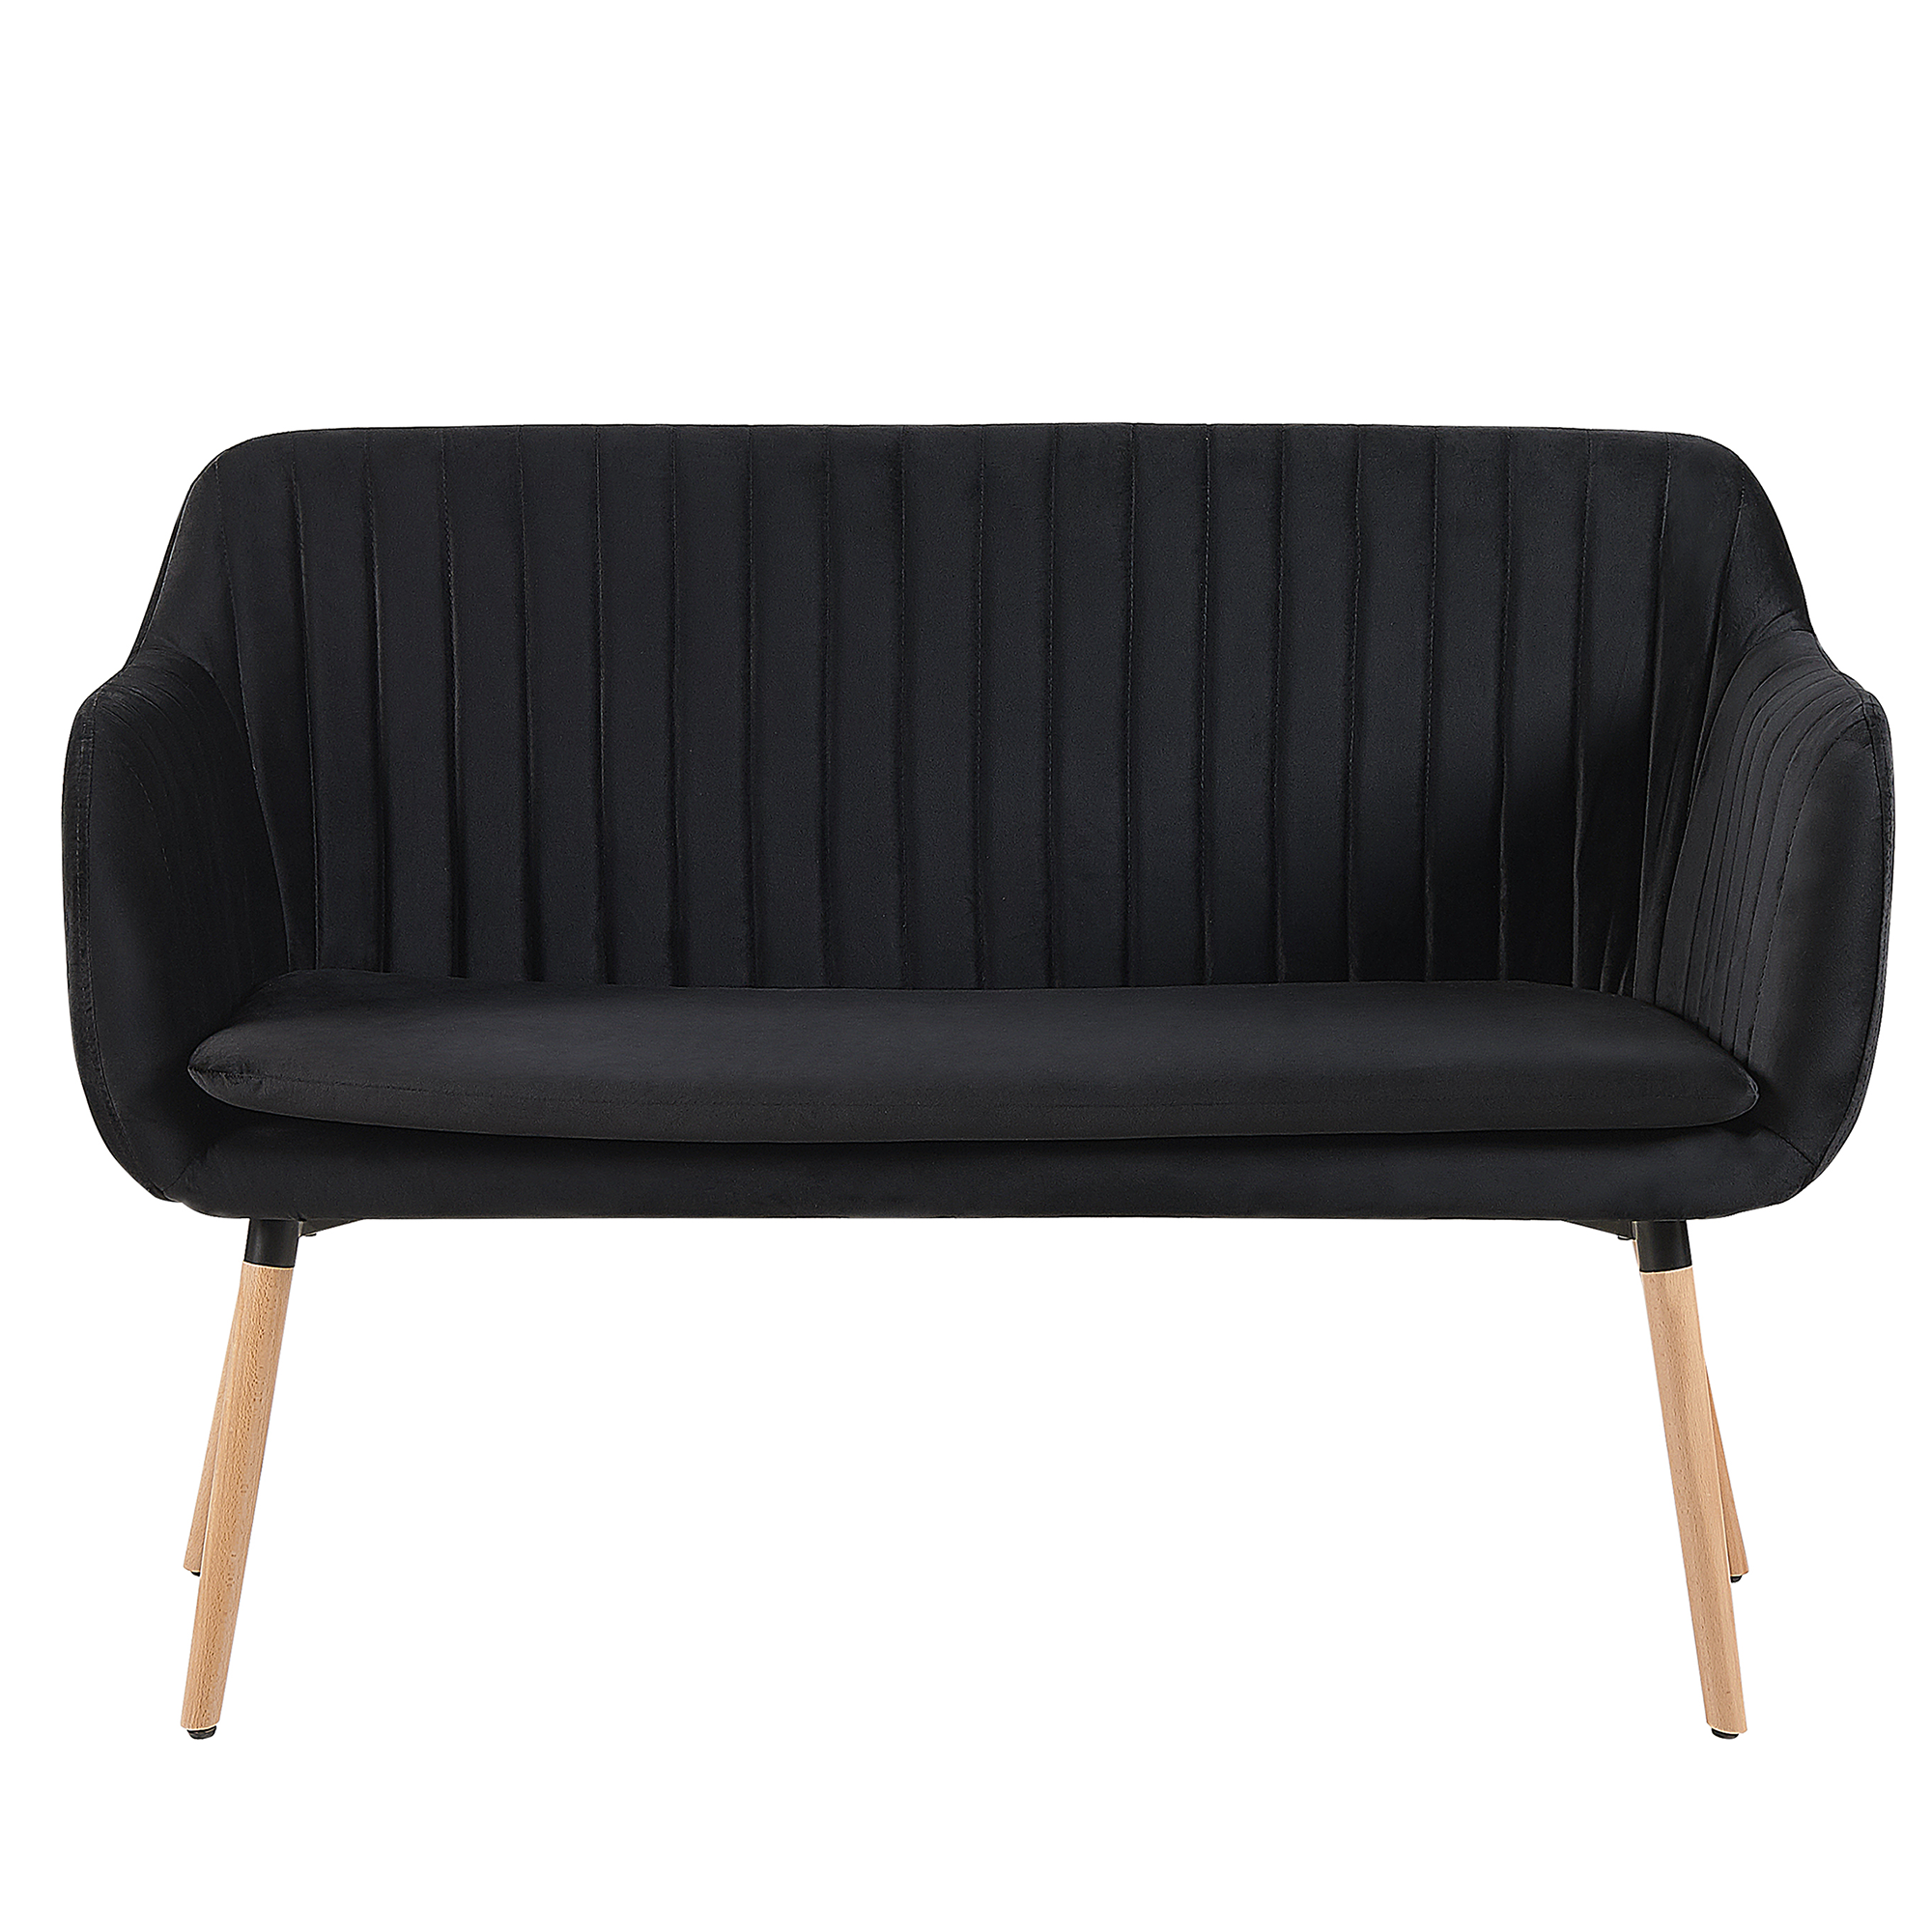 Beliani Kitchen Sofa Black Velvet Fabric Upholstery 2-Seater Metal Frame Light Wood Legs Bench